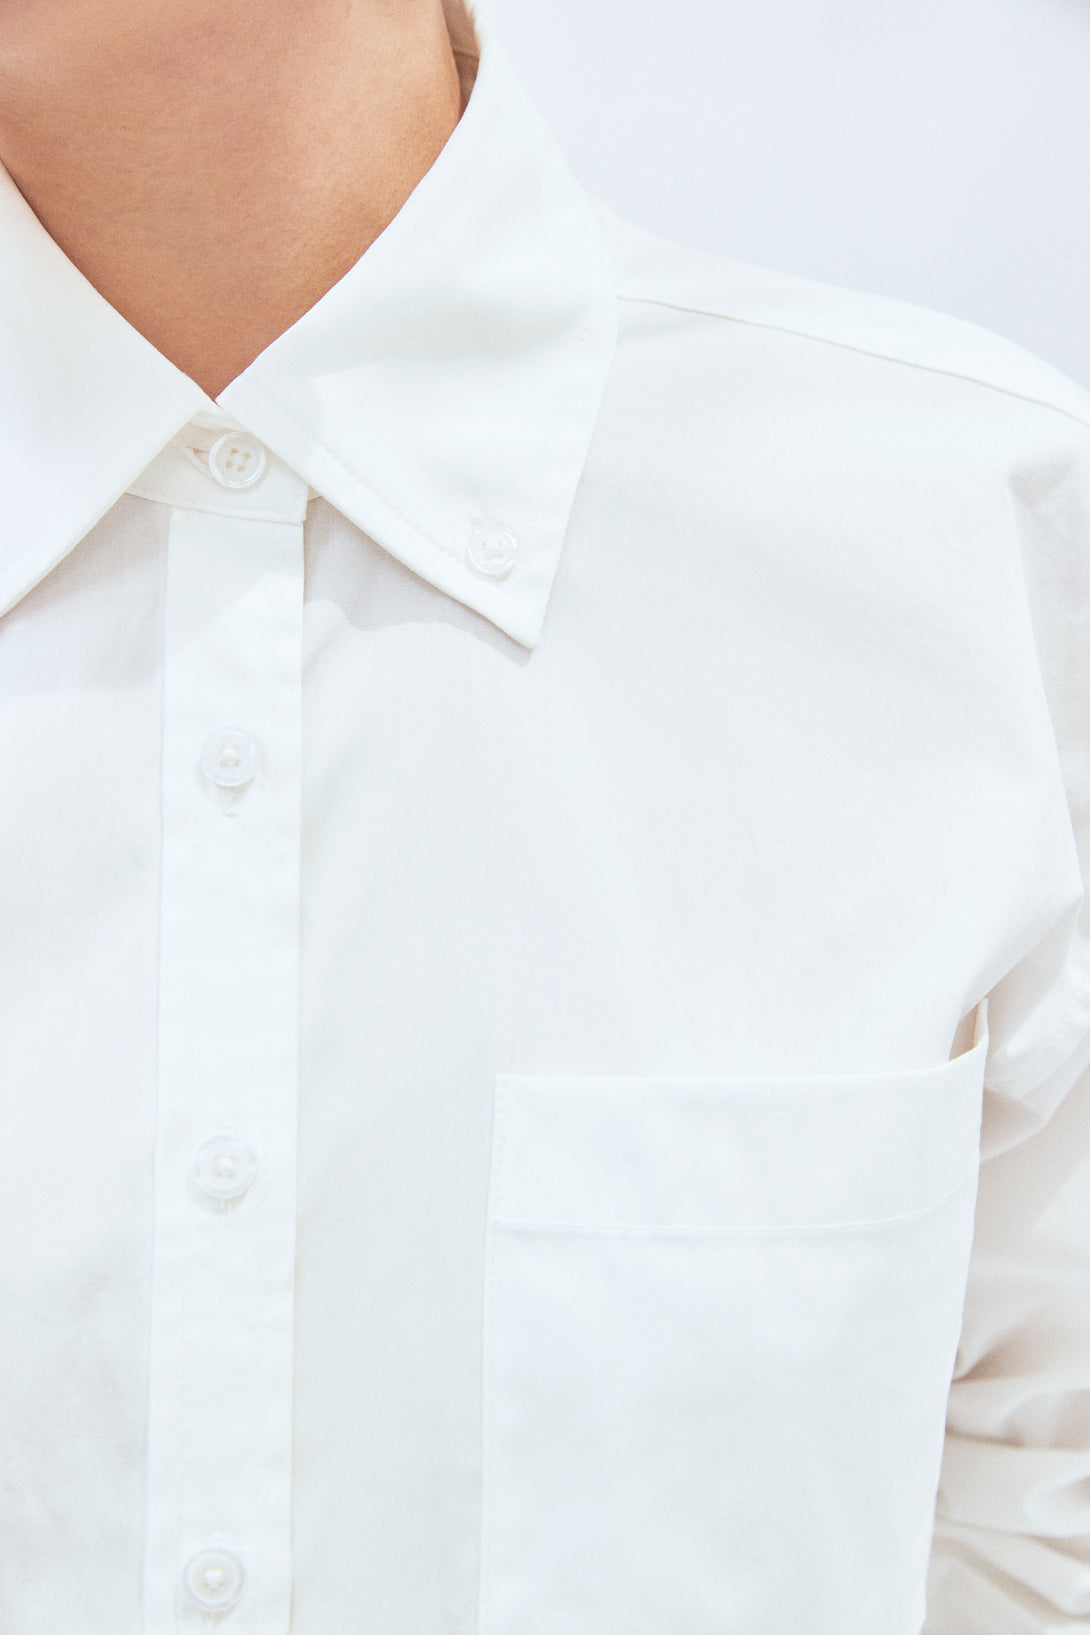 Boxy White Button-Down Shirt